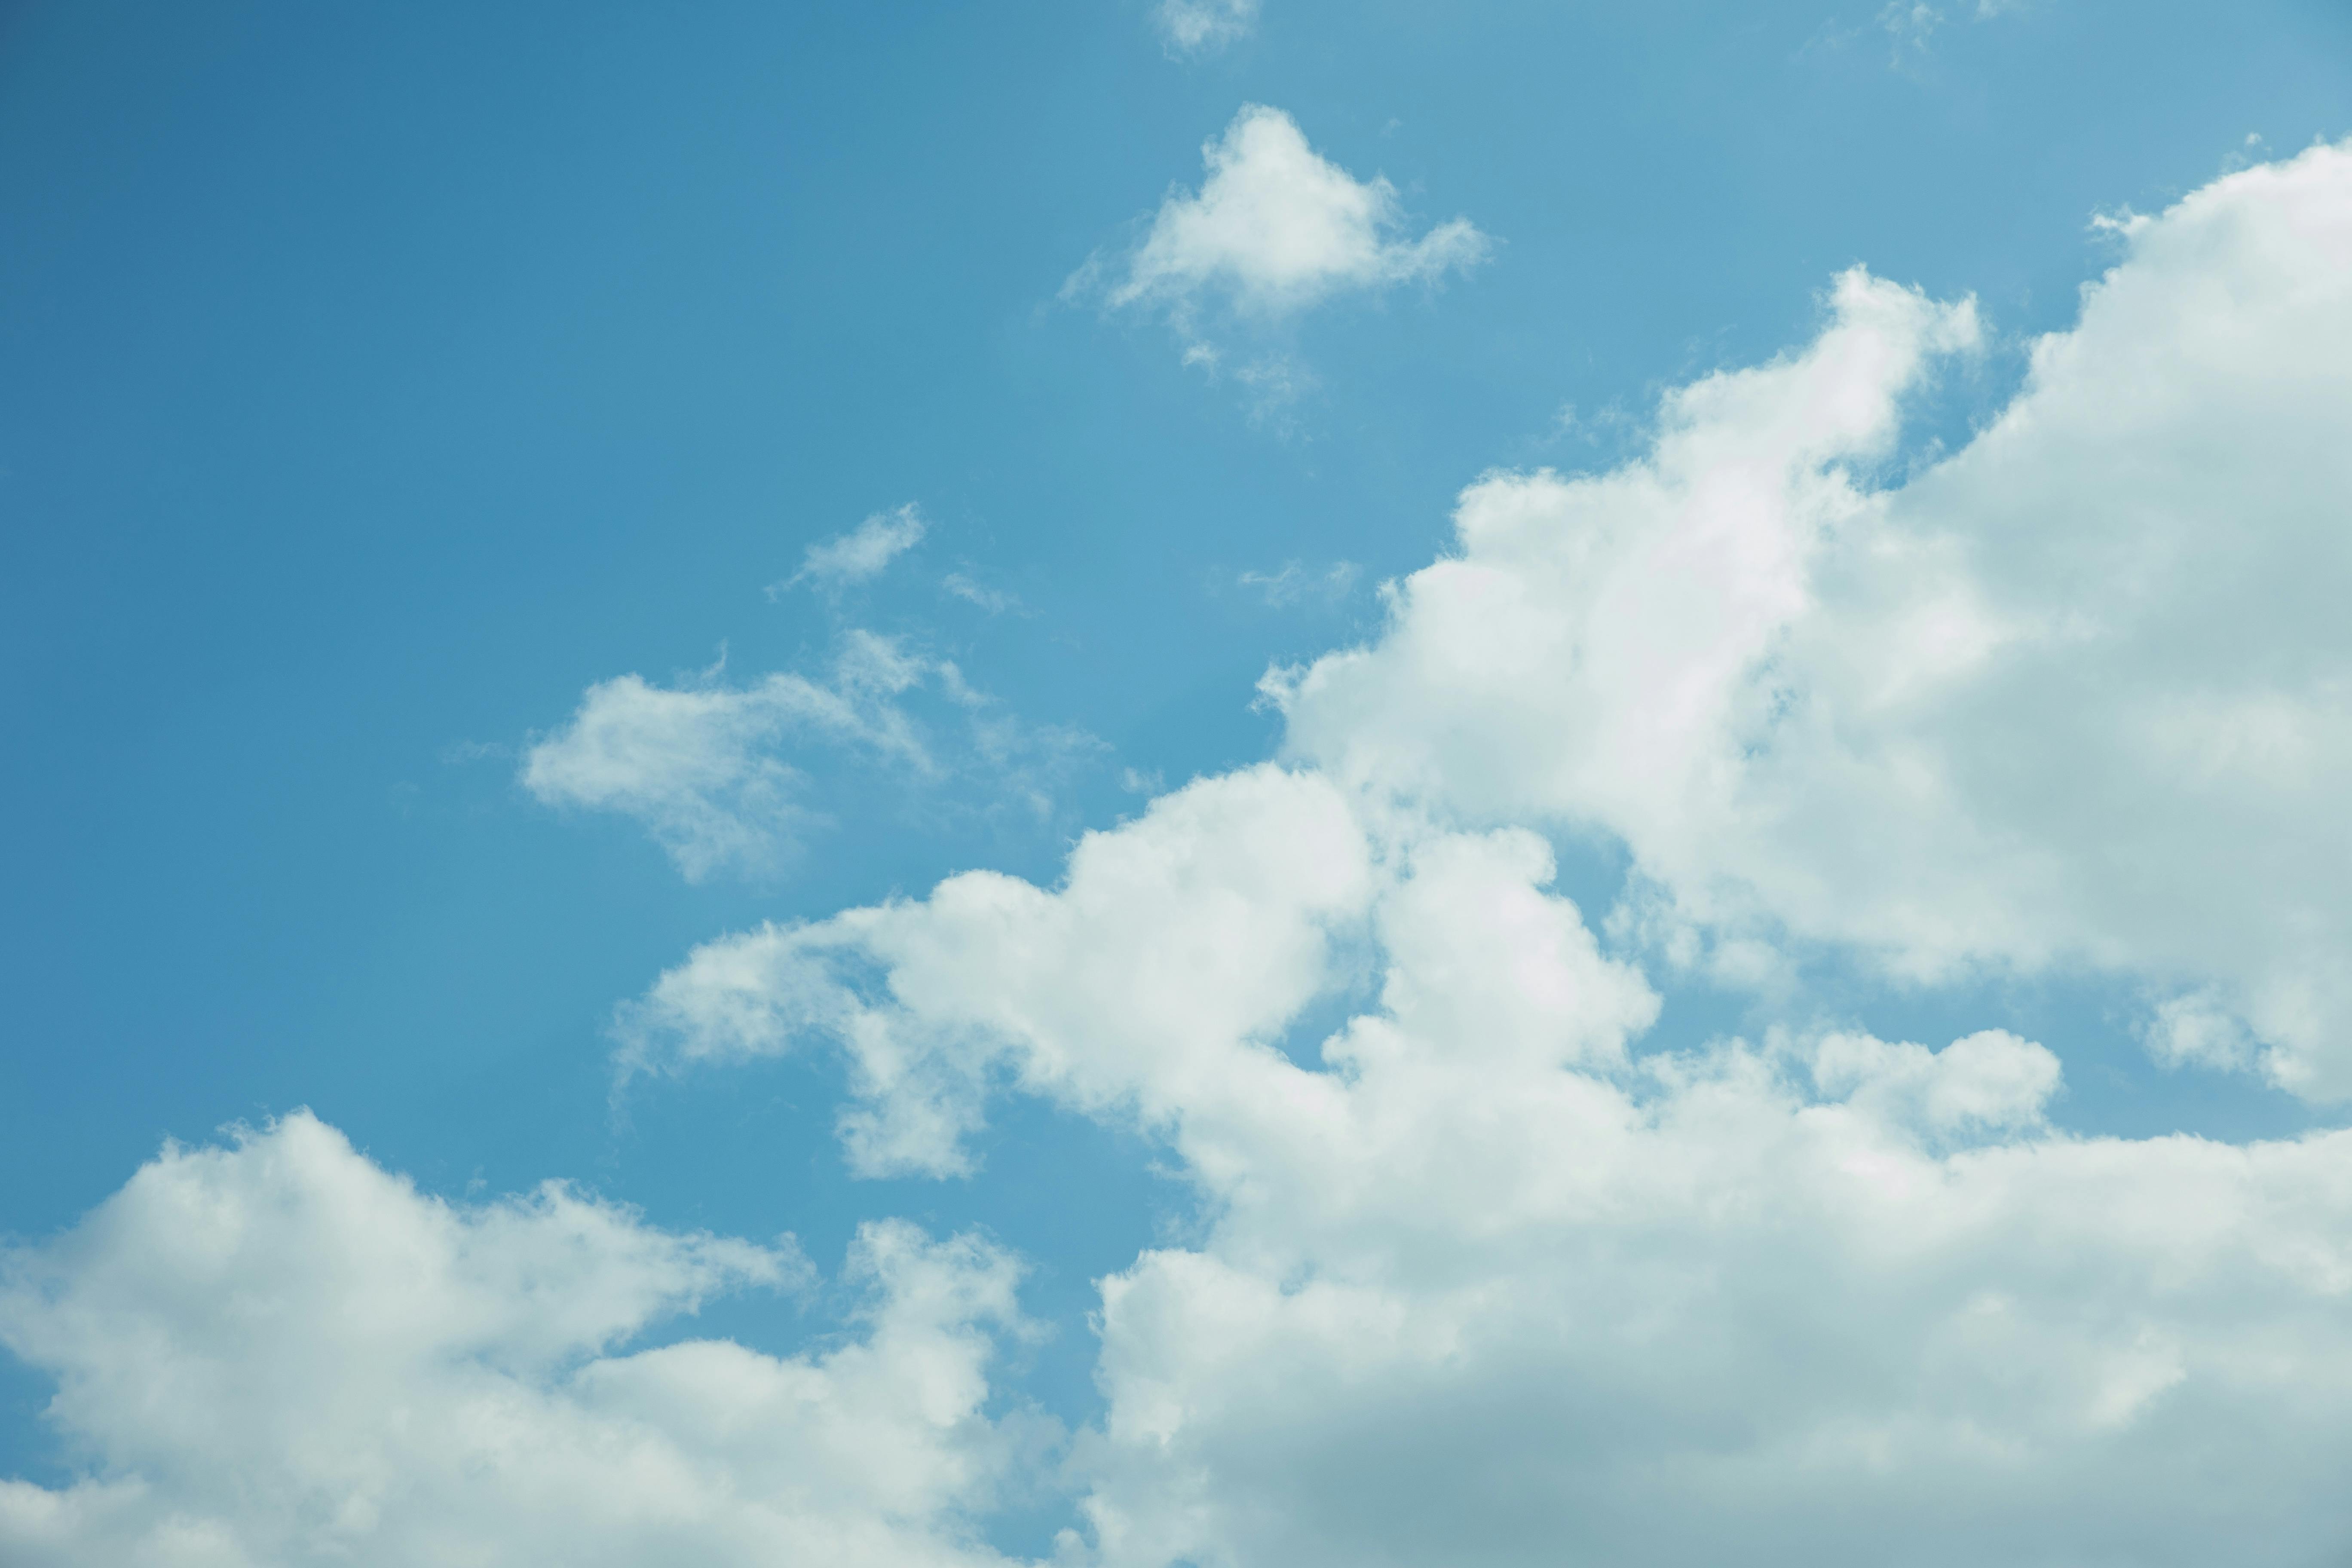 Đám mây dày: Hãy bấm vào bức ảnh thú vị này để ngắm nhìn những đám mây dày đặc, tạo thành những hình dáng phong phú và độc đáo. Bạn sẽ được tìm hiểu những kiến thức mới về khí tượng học và văn hóa trên khắp thế giới sử dụng đám mây như thế nào để dự báo thời tiết và sinh hoạt hàng ngày.